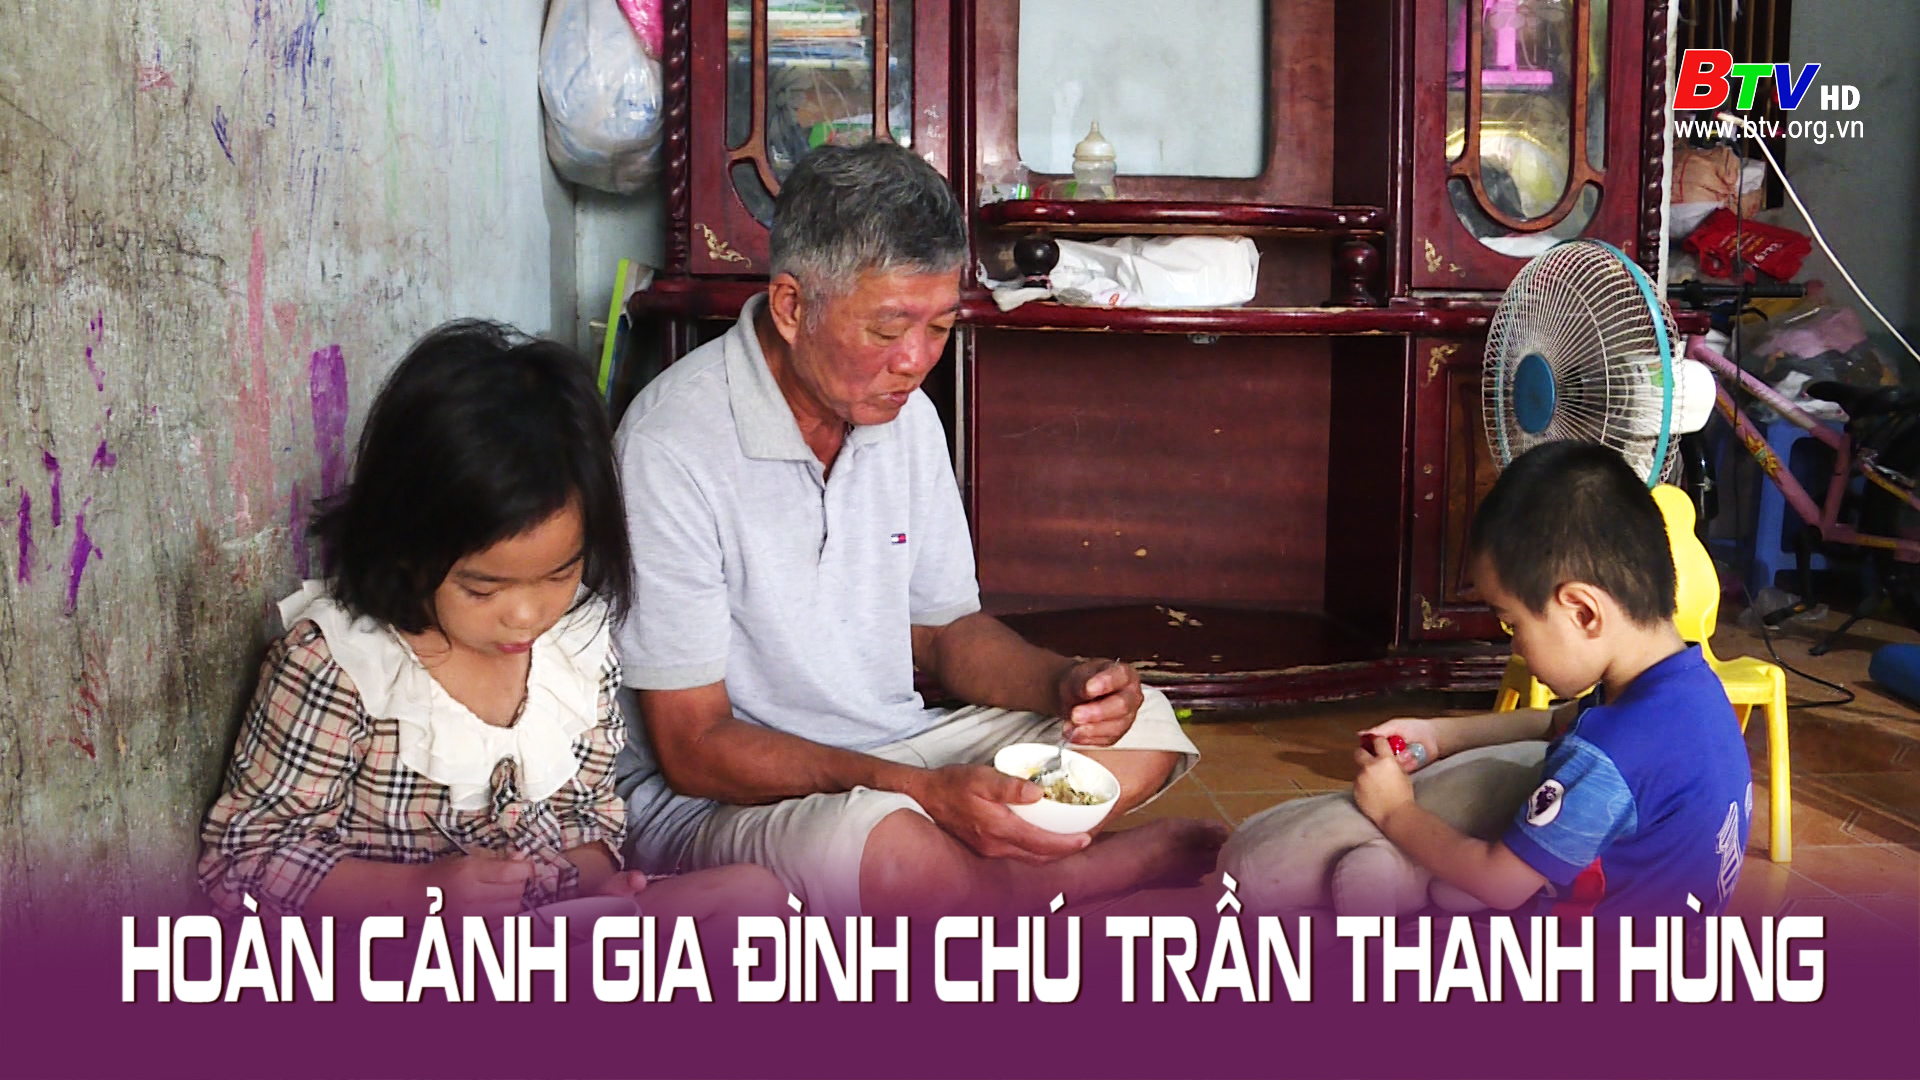 Hoàn cảnh gia đình chú Trần Thanh Hùng